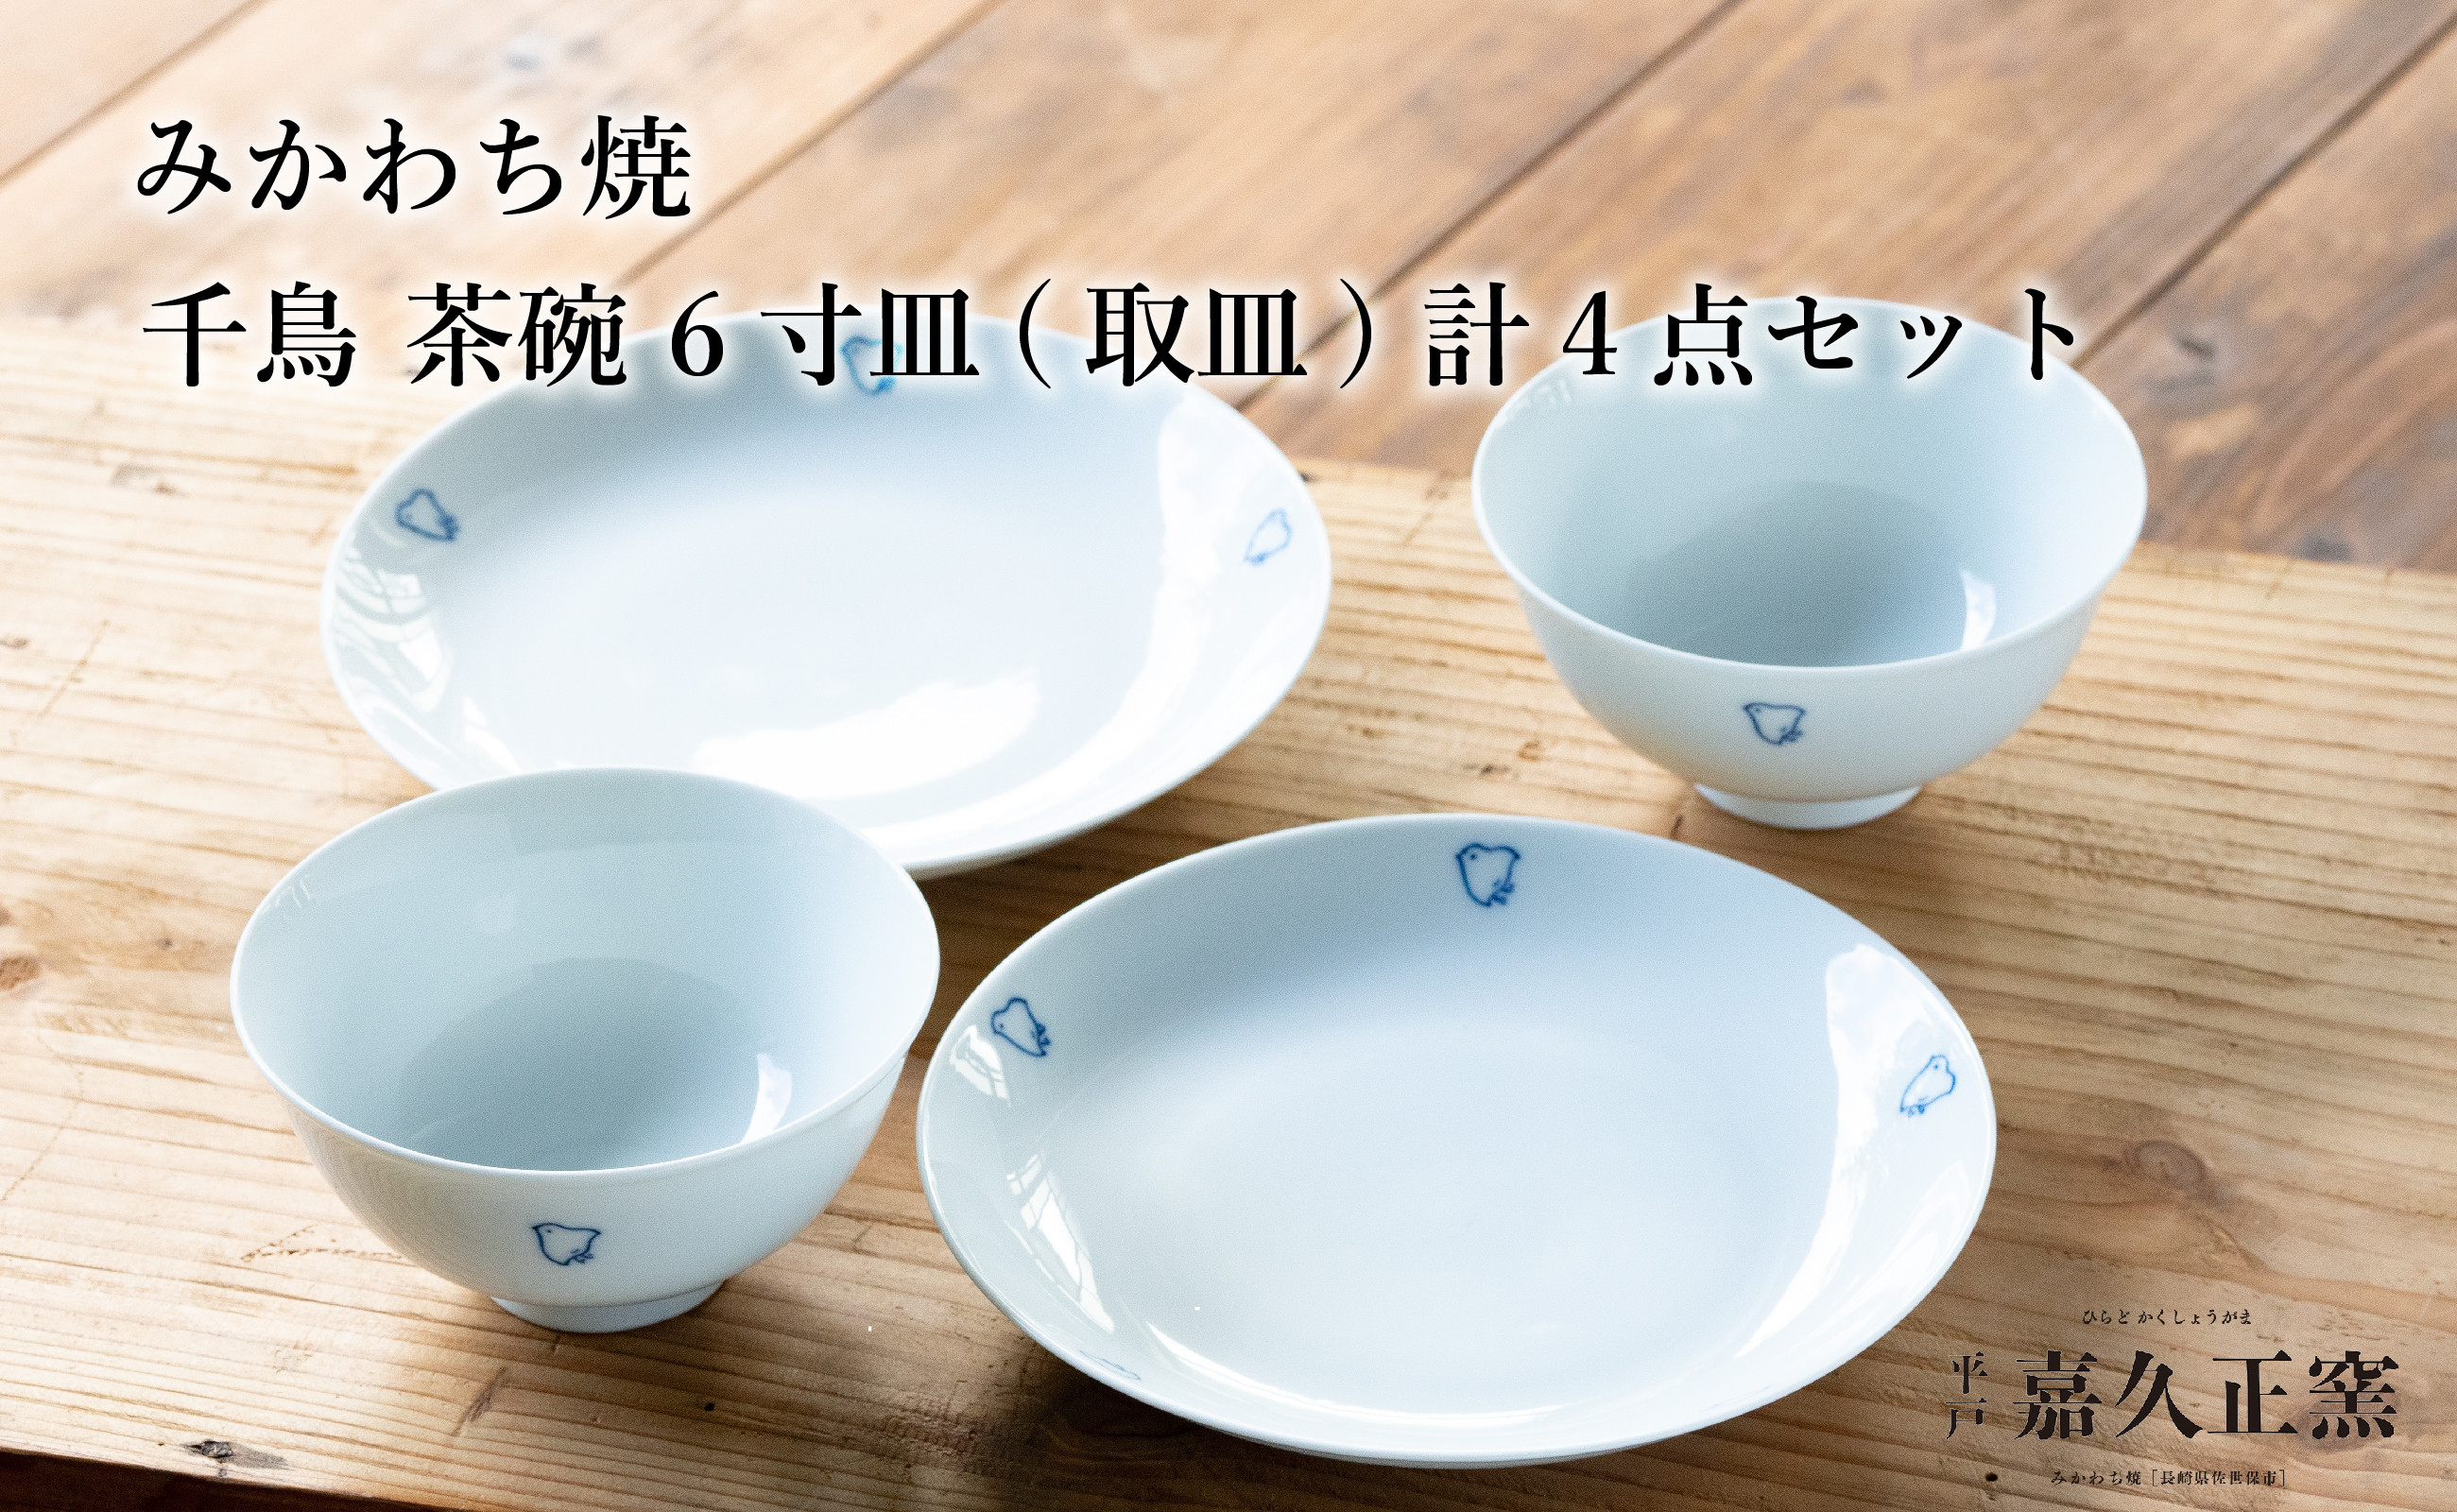 〈嘉久正窯〉千鳥 茶碗 6寸皿 計4点セット  手描き 染付  飯碗 茶碗 ケーキ皿 パン皿 盛り皿 食器 皿